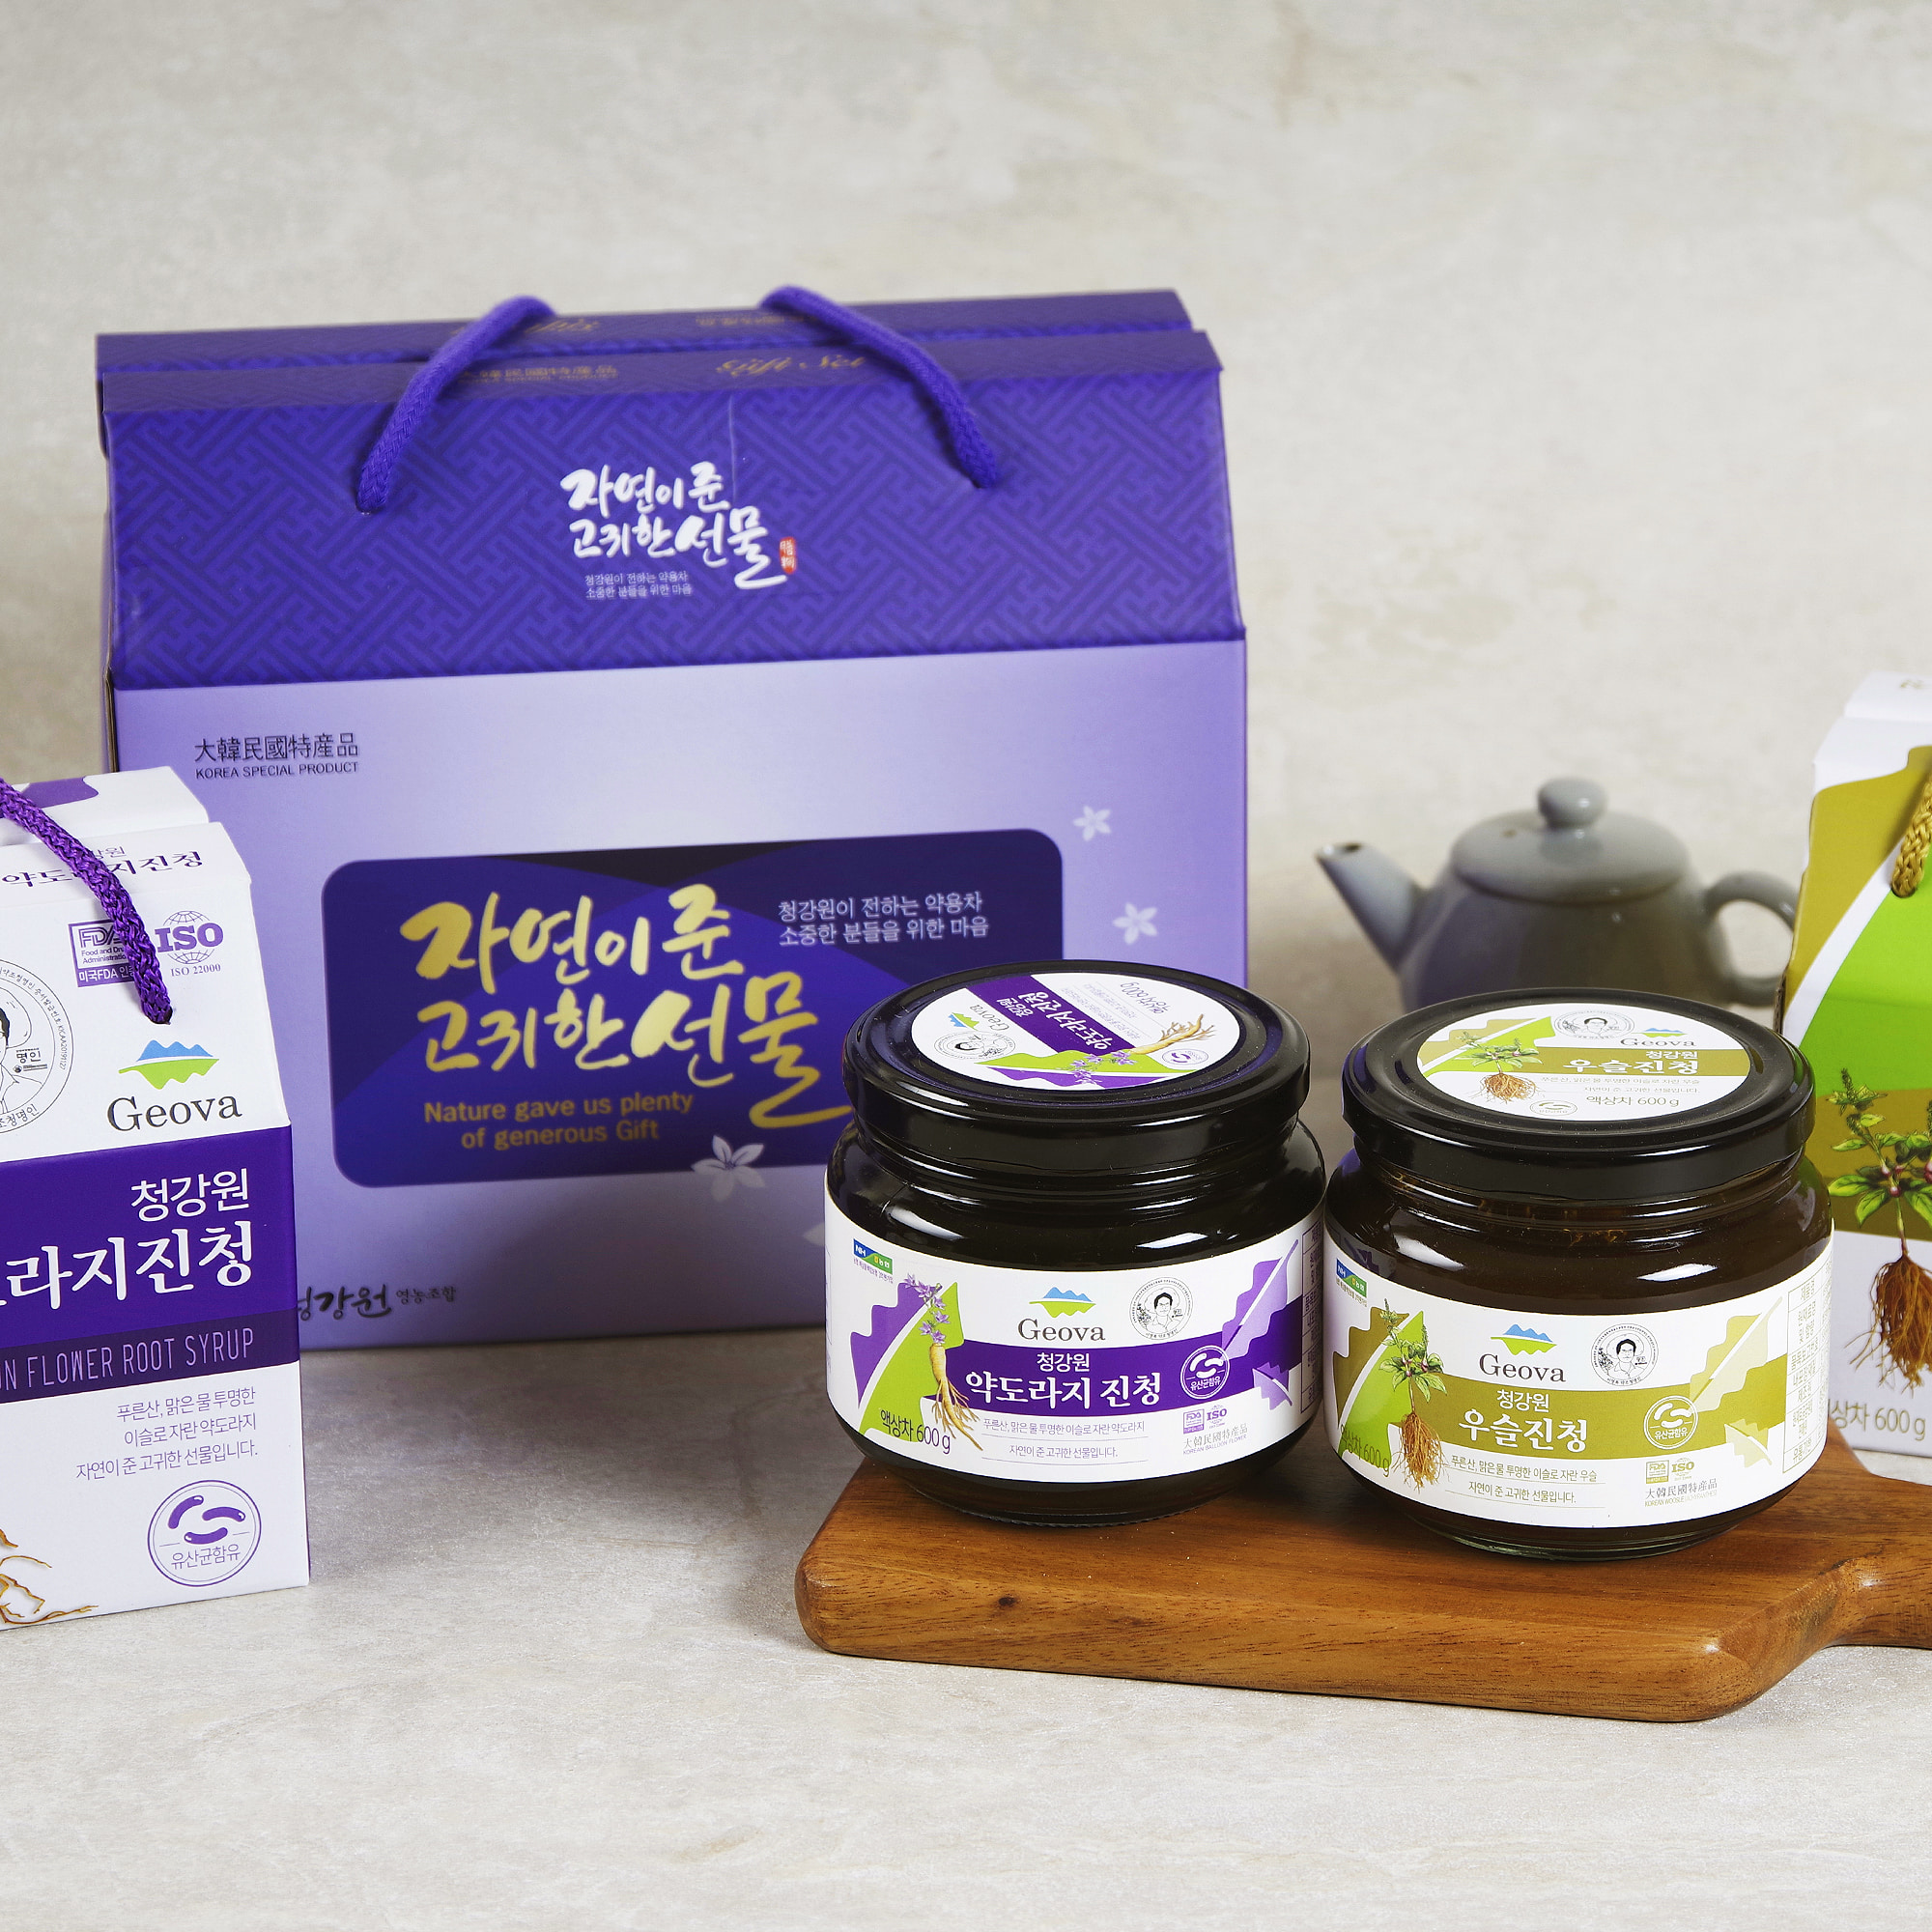 청강원 진청 선물세트 - Cheonggang-won Syrup Gift Set